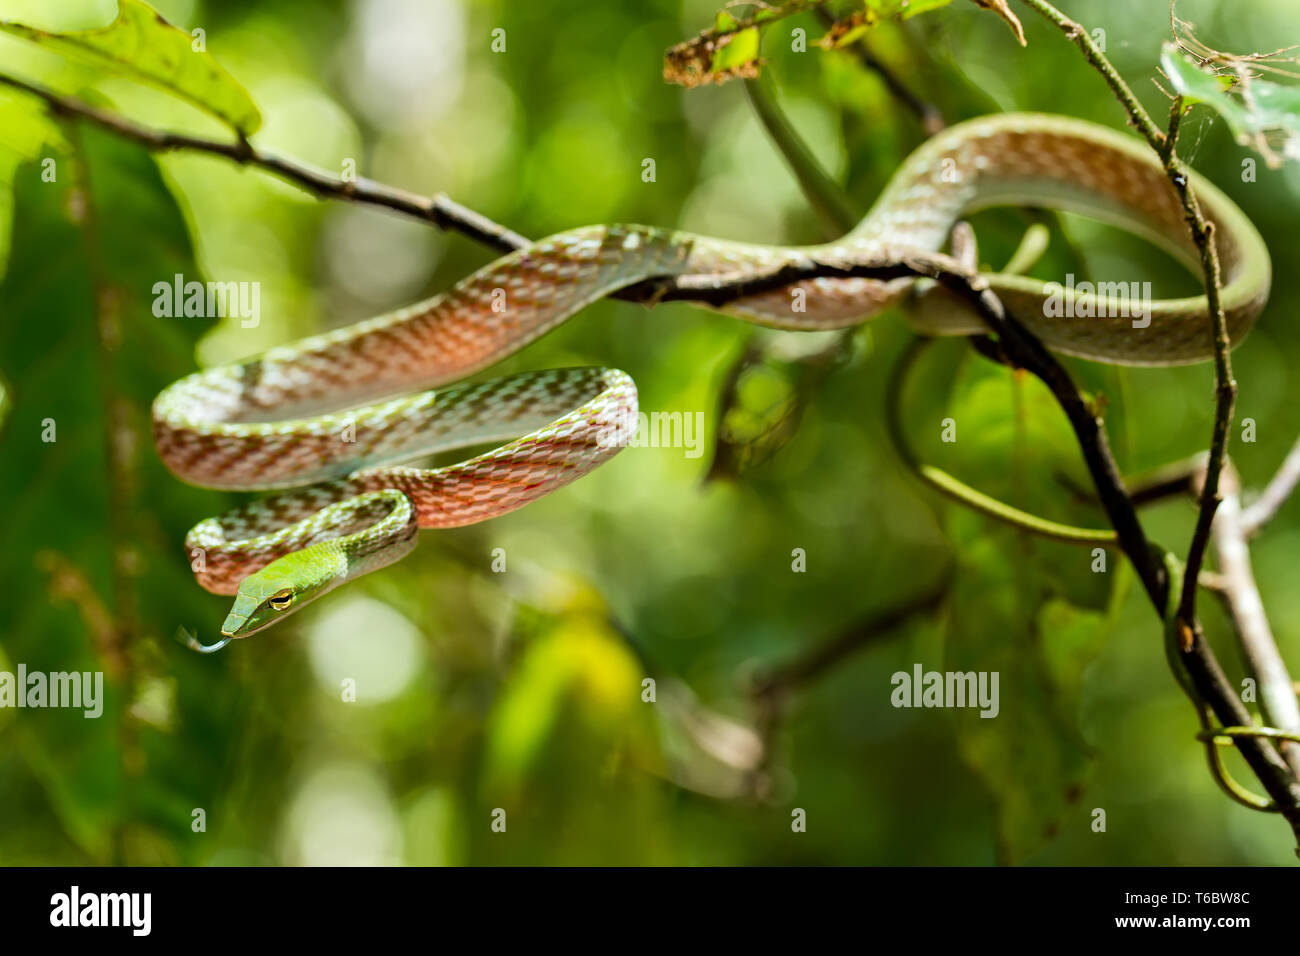 green Asian Vine Snake (Ahaetulla prasina) Stock Photo